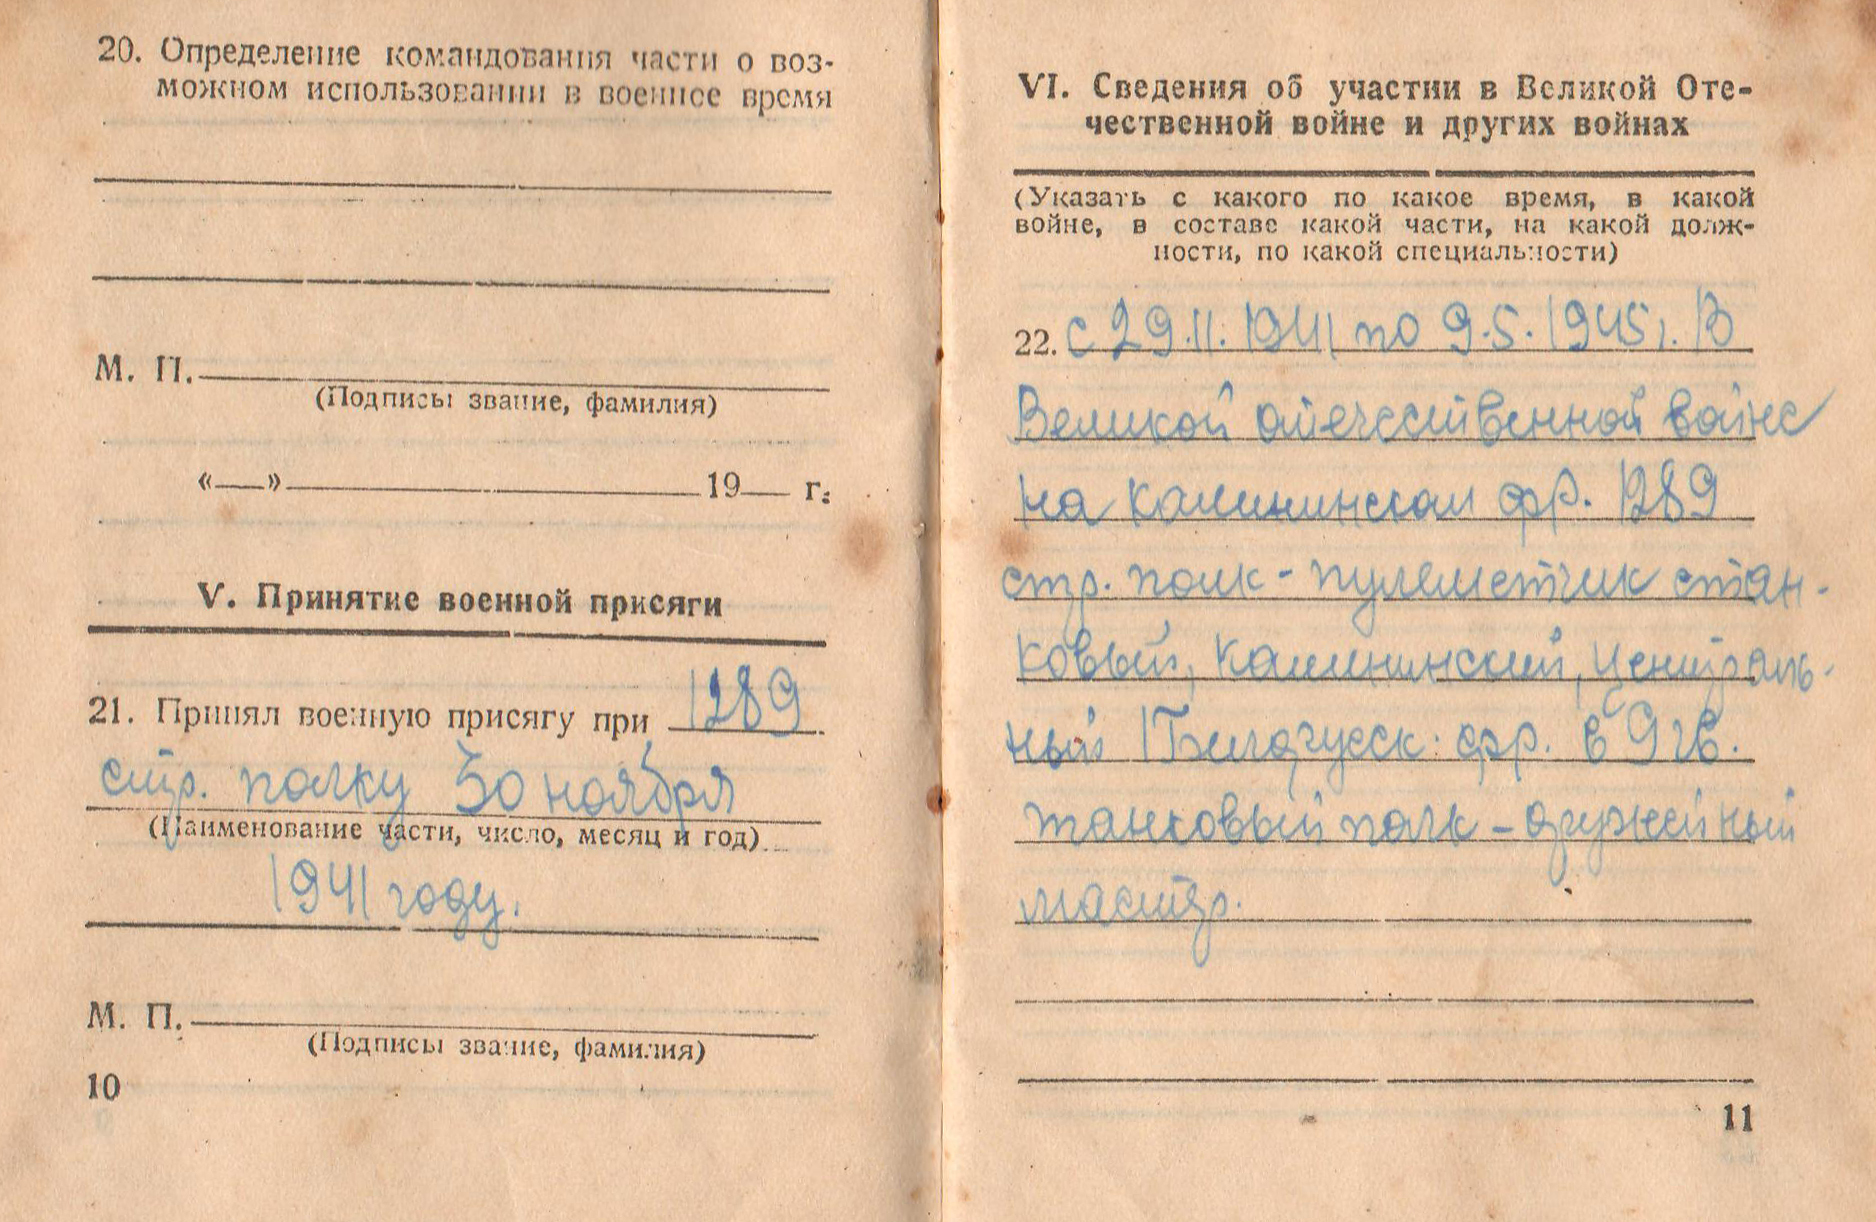 Абрамов М.И. Военный билет, 1948 г. (6 стр.)